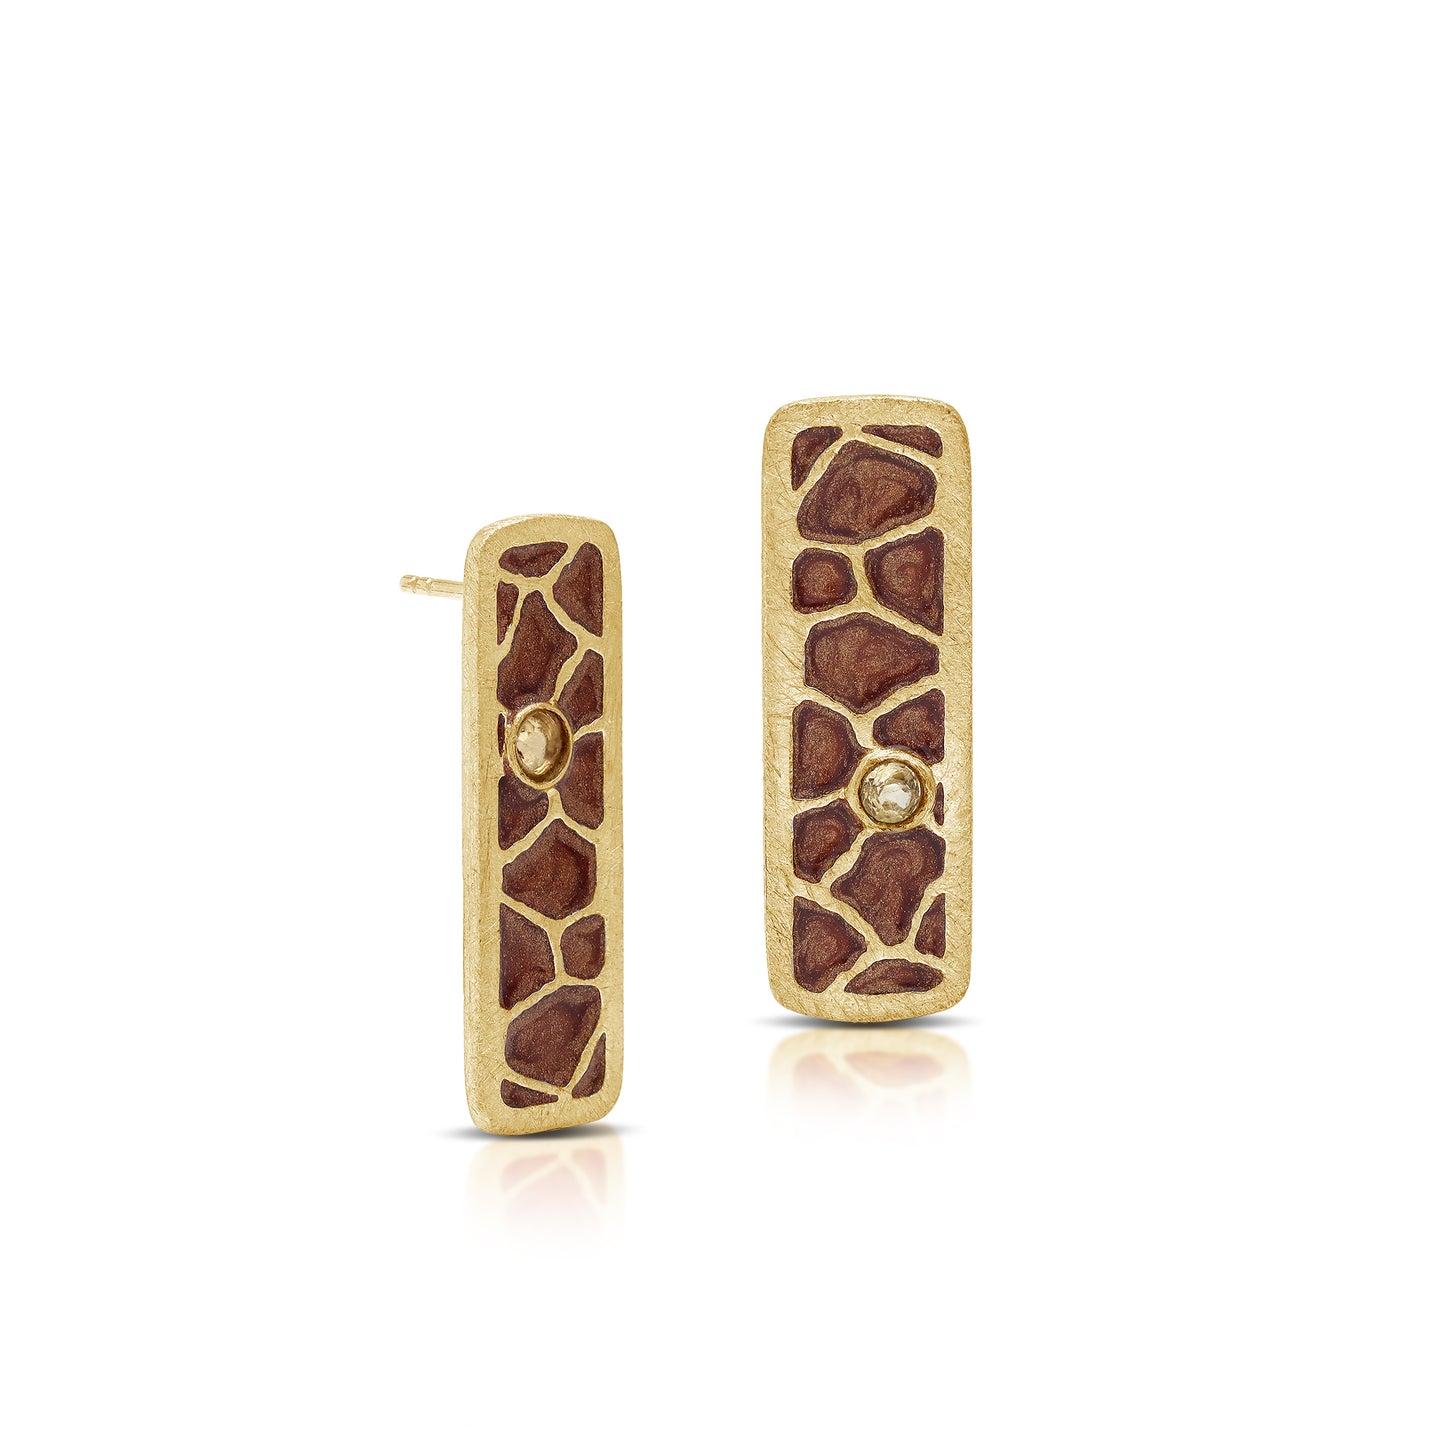 Giraffe Animal Pattern Enamel Earrings 18kt Gold Plate